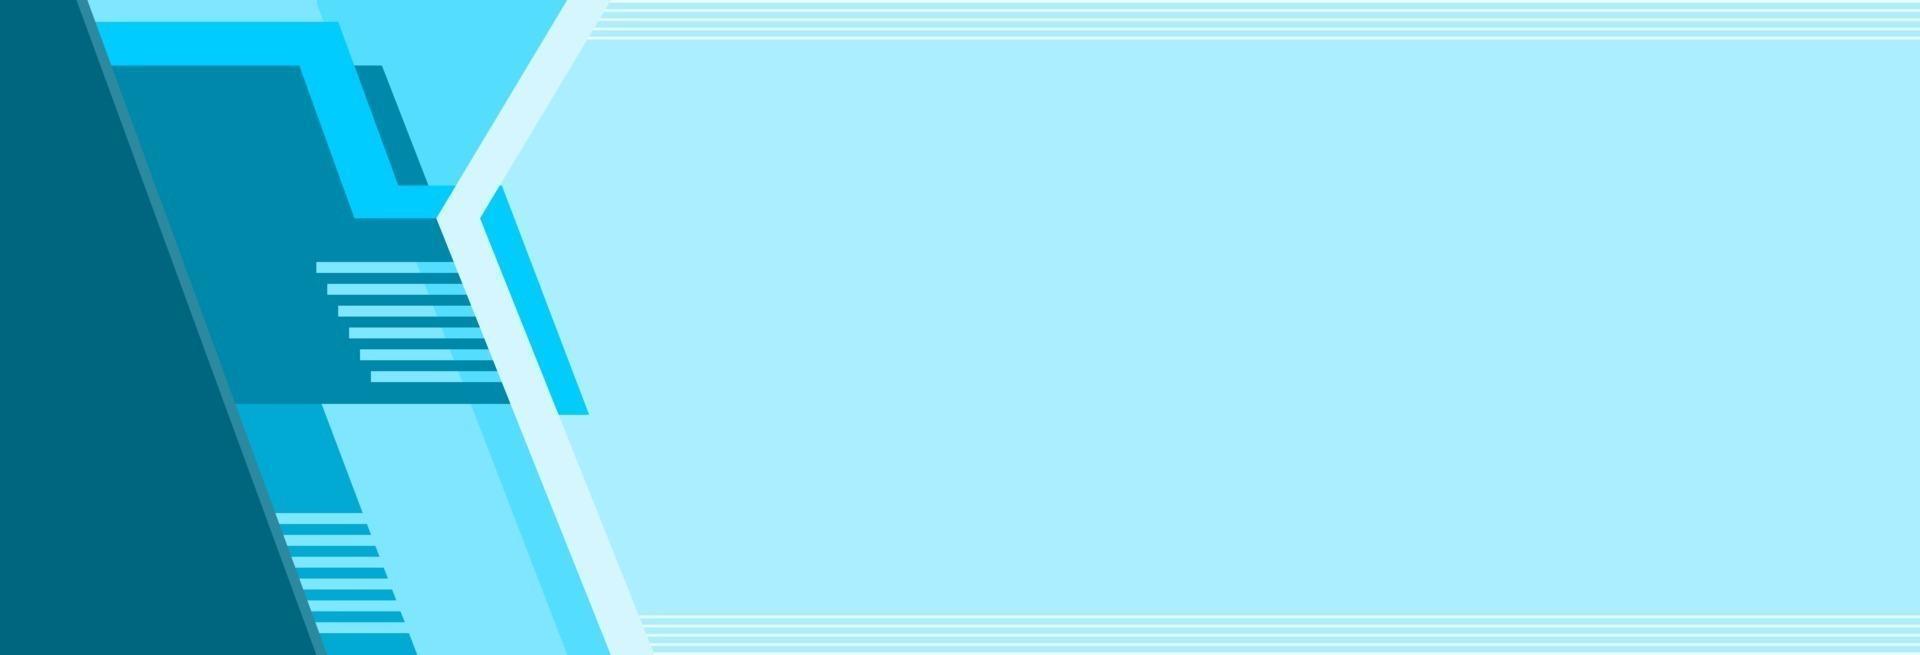 une bannière bleue avec un ornement bleu sur le côté gauche, également adaptée aux arrière-plans, sites Web, affiches, brochures, présentations, dépliants, couvertures, médias sociaux, livrets, dépliants, publicités, cartes vecteur